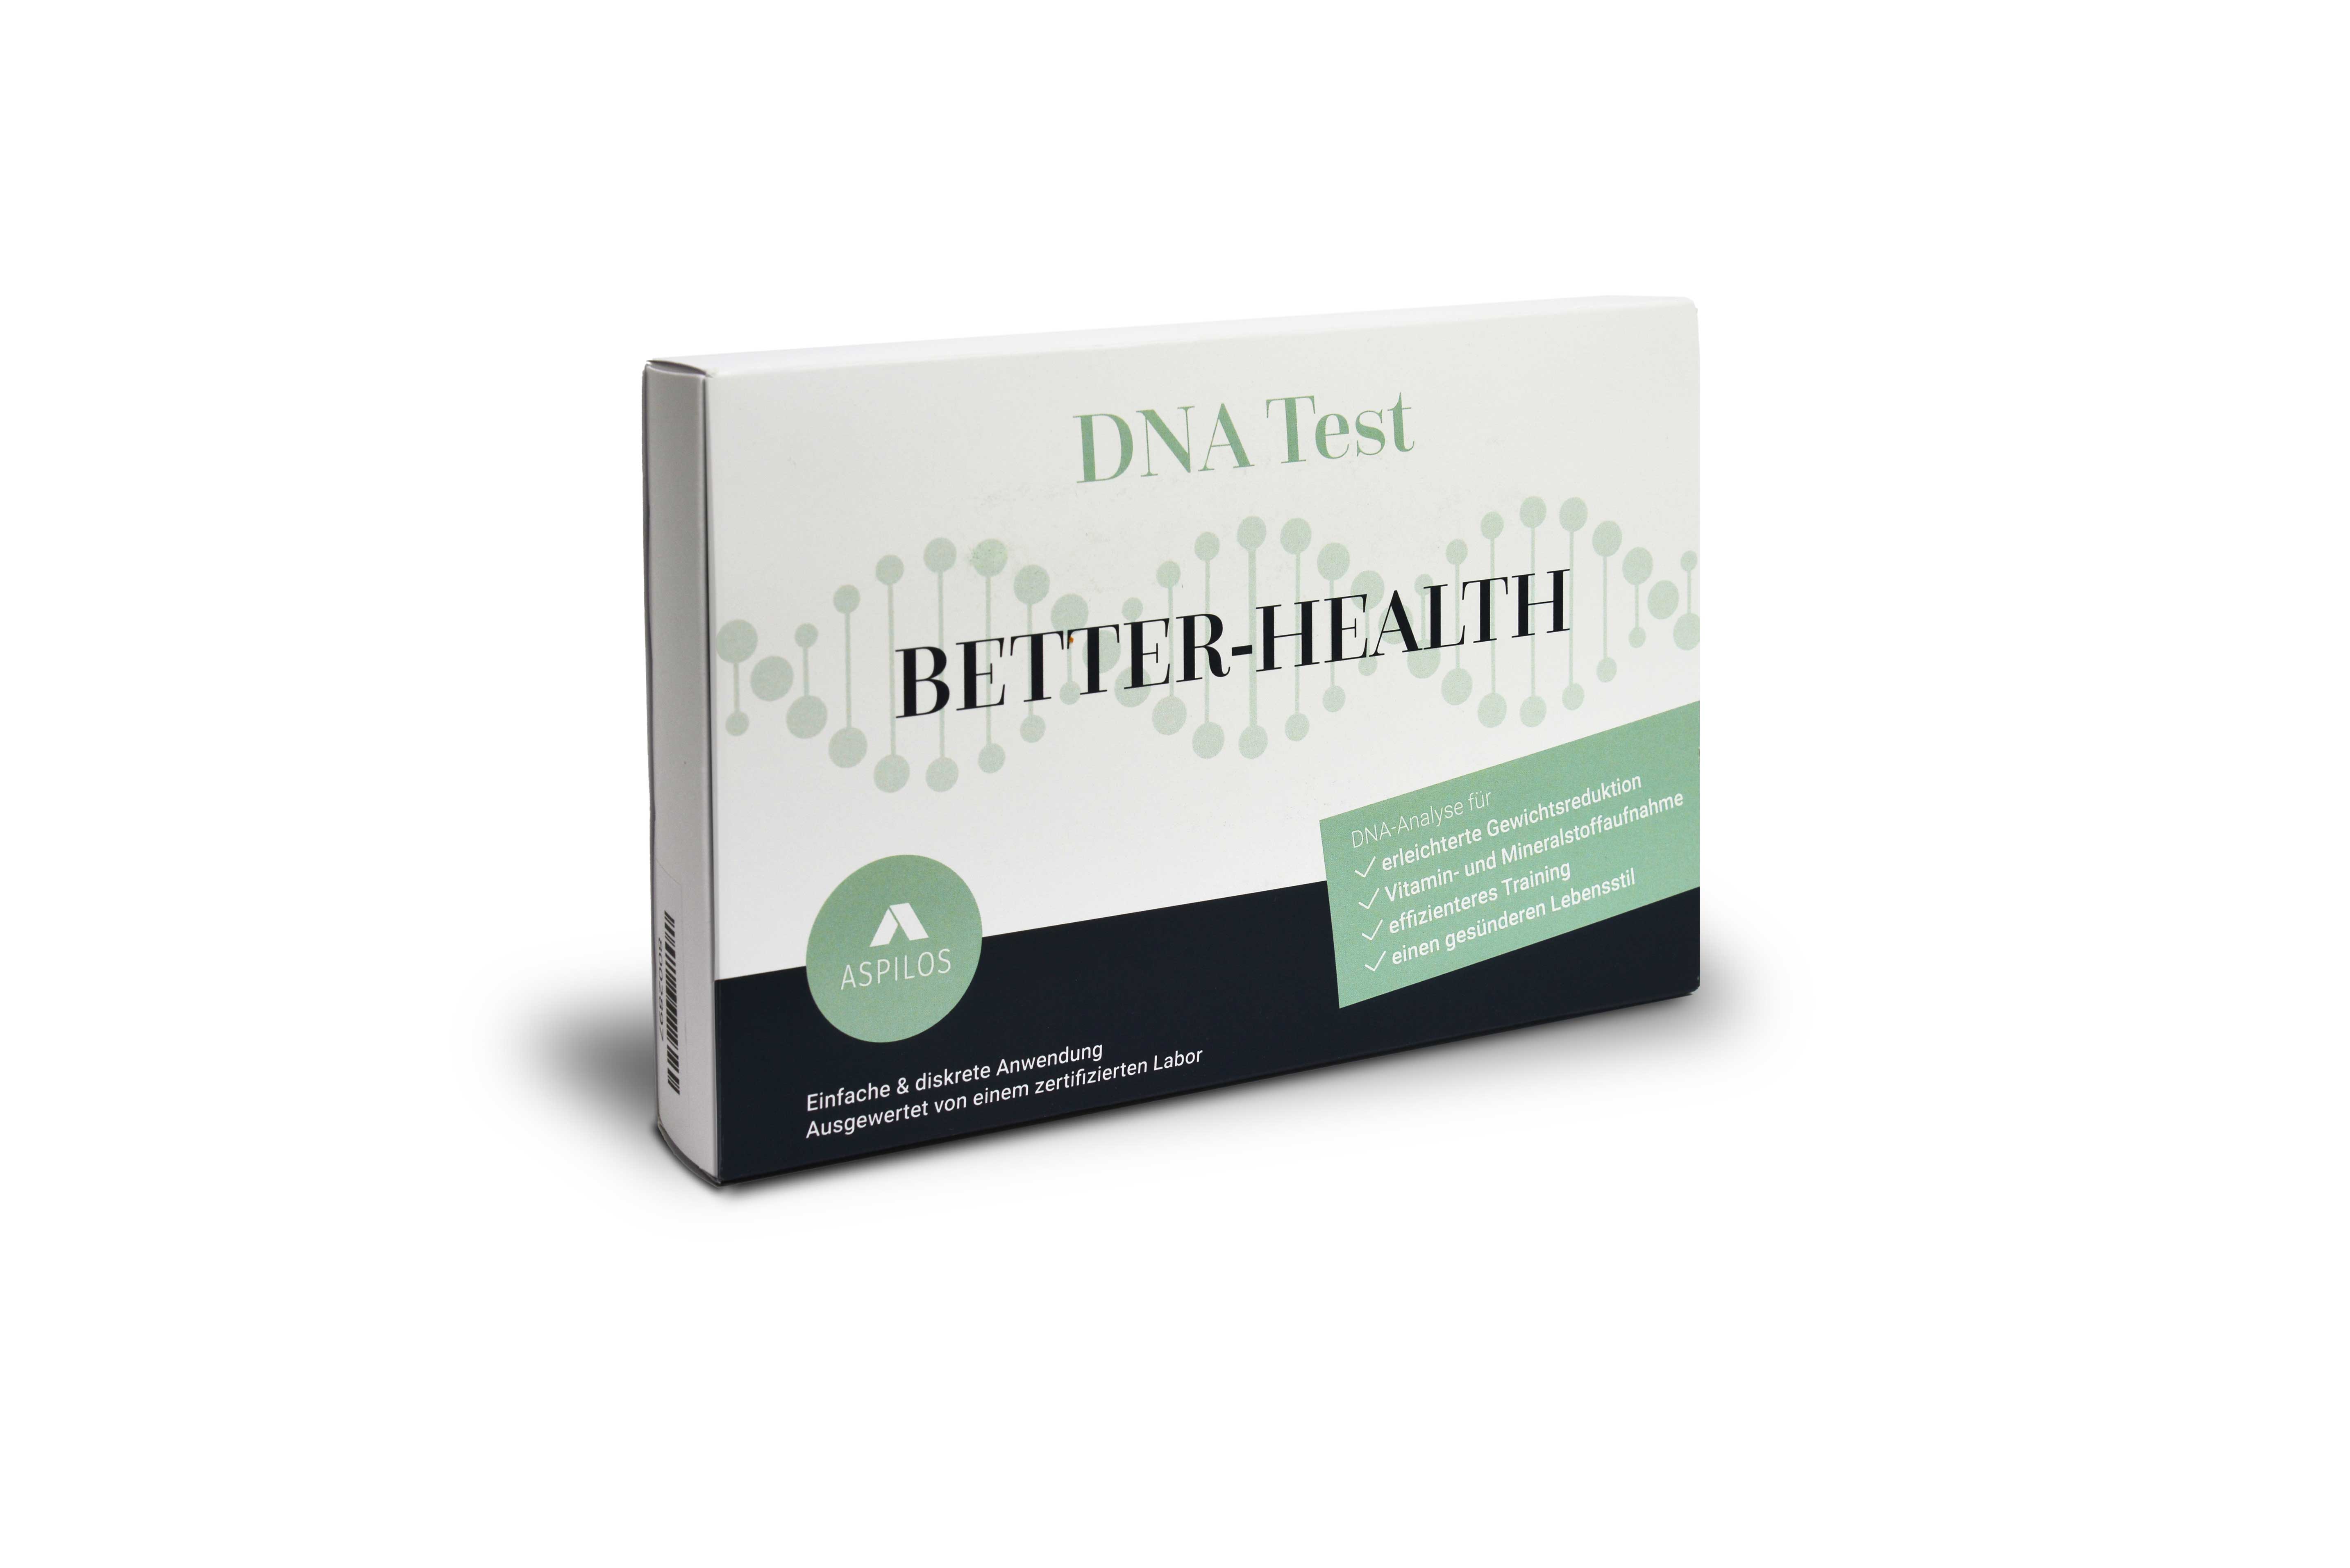 BETTER-HEALTH: DNA Test zur Optimierung der Gesundheit